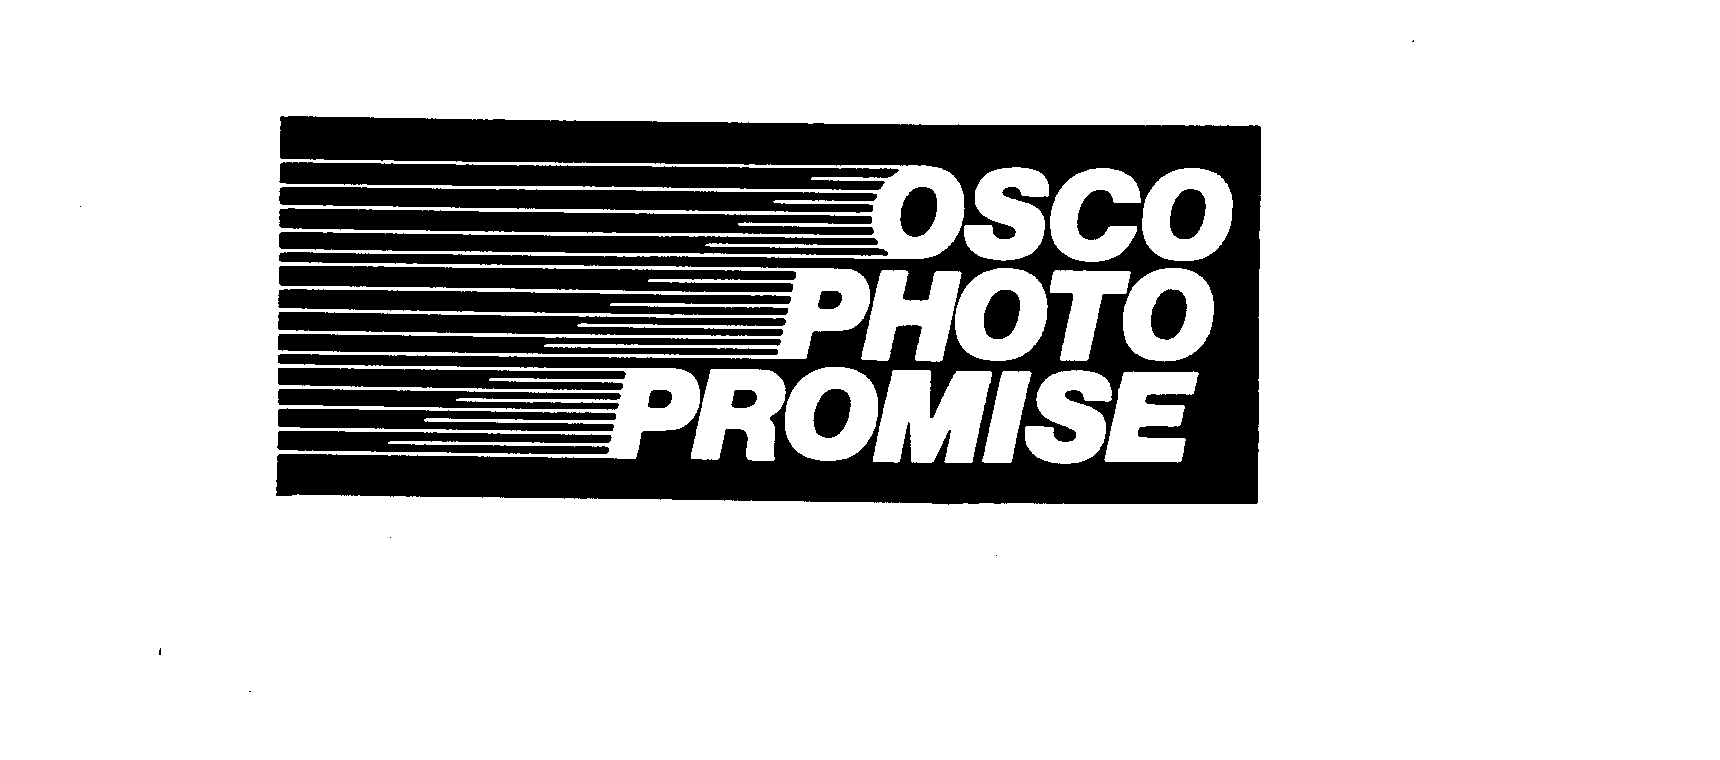  OSCO PHOTO PROMISE